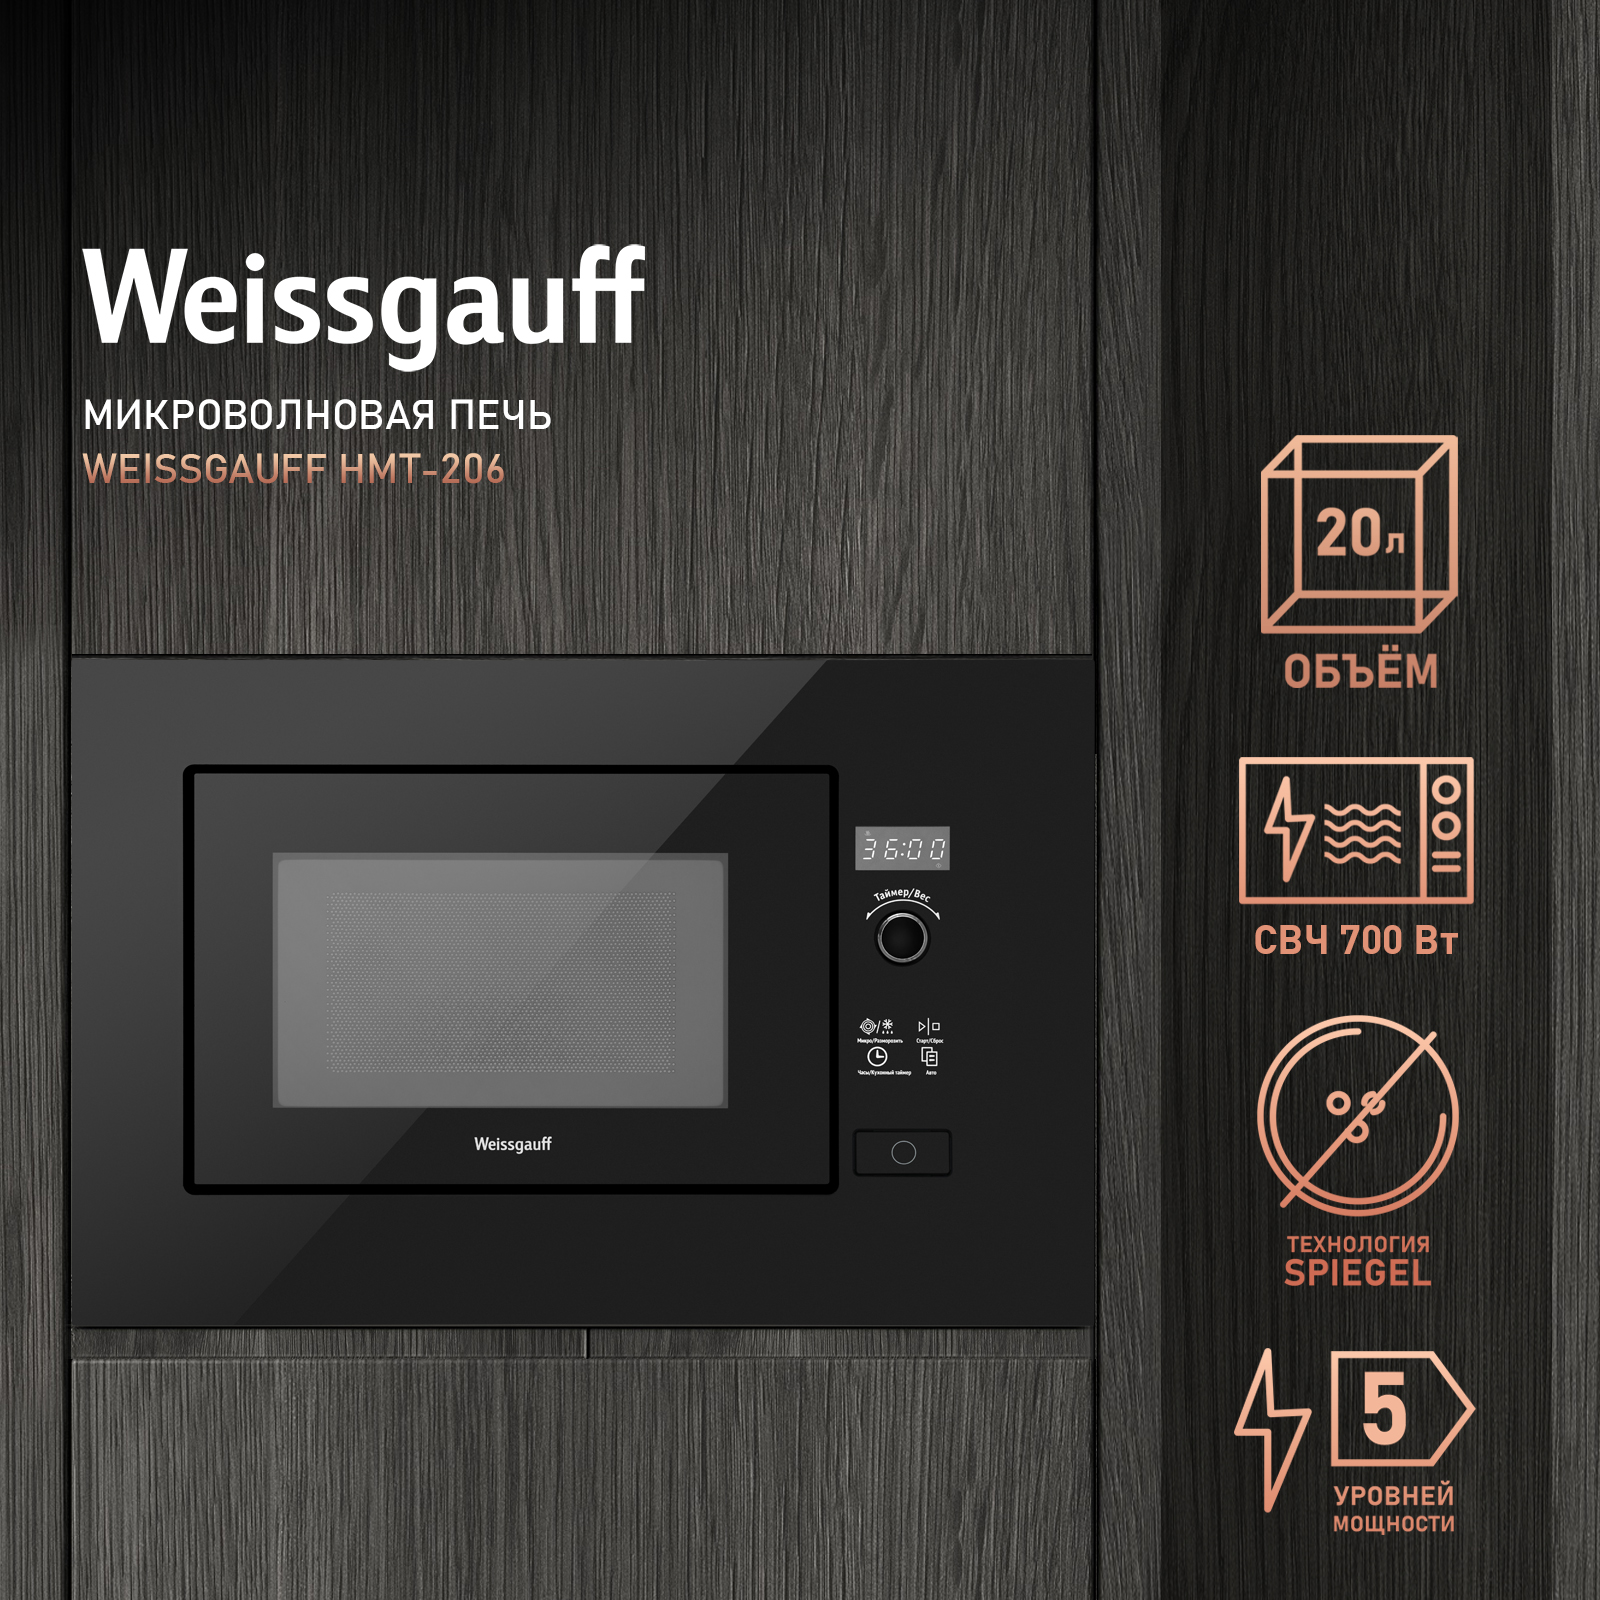 Встраиваемая микроволновая печь Weissgauff HMT-206 Black встраиваемая микроволновая печь weissgauff hmt 202 white